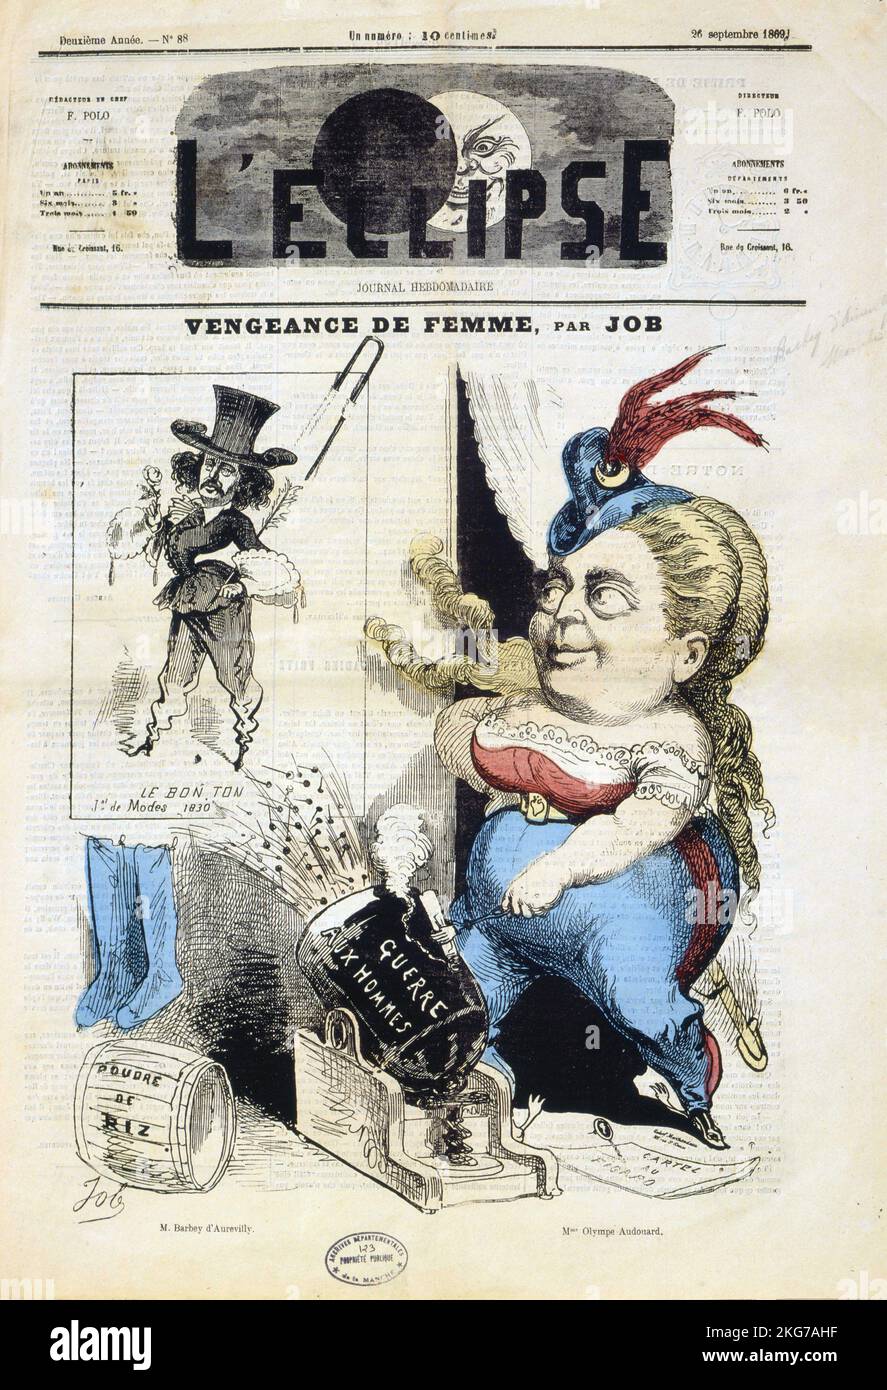 La caricatura dello scrittore francese Jules Barbey d'Aurevilly pubblicata sulla prima pagina della rivista 'l'Eclipse' il 26 settembre 1869. Disegno per lavoro. Foto Stock